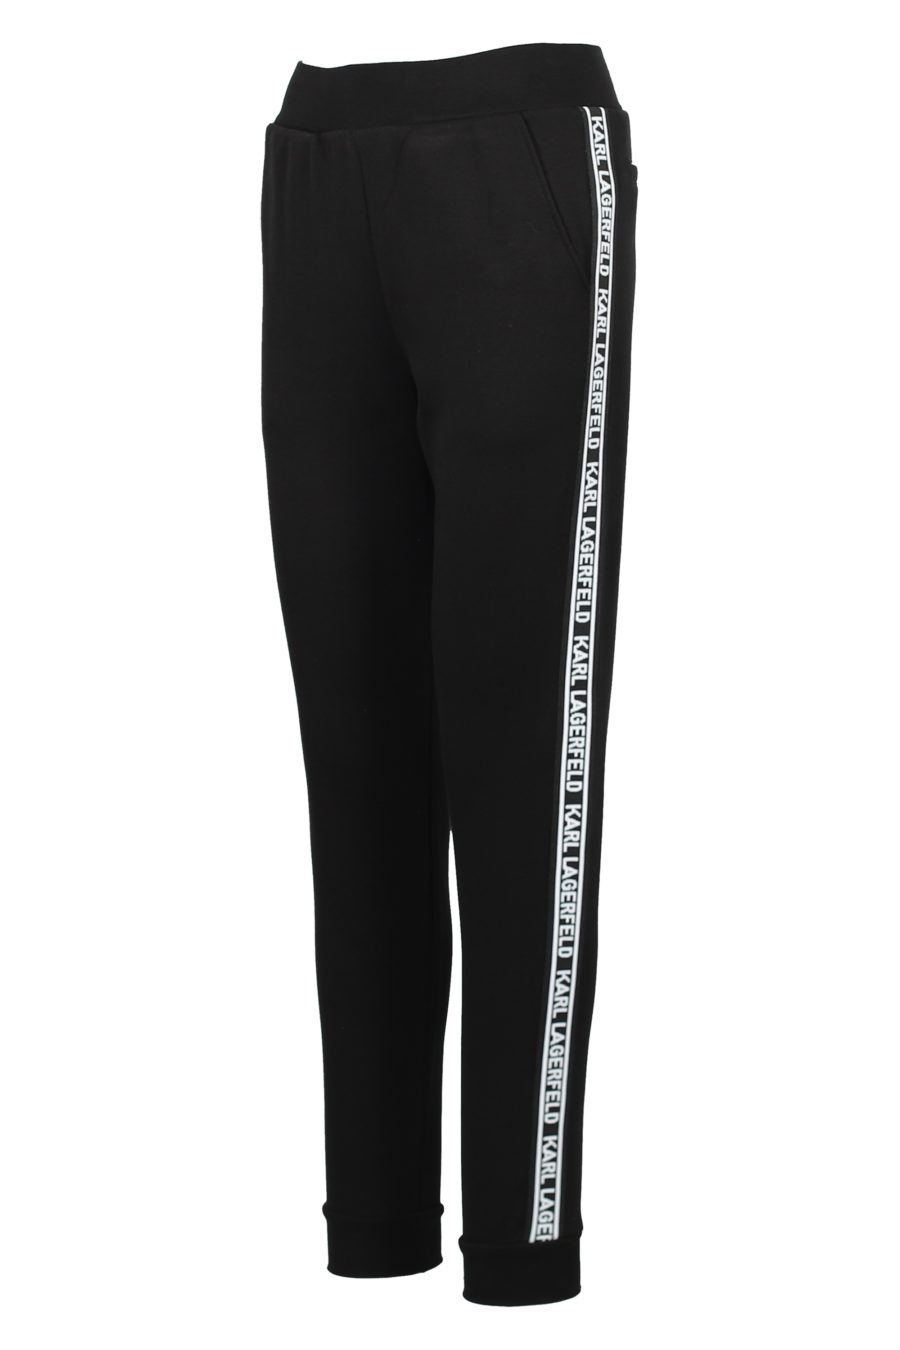 Pantalón de chandal negro con logo blanco lateral - IMG 3174